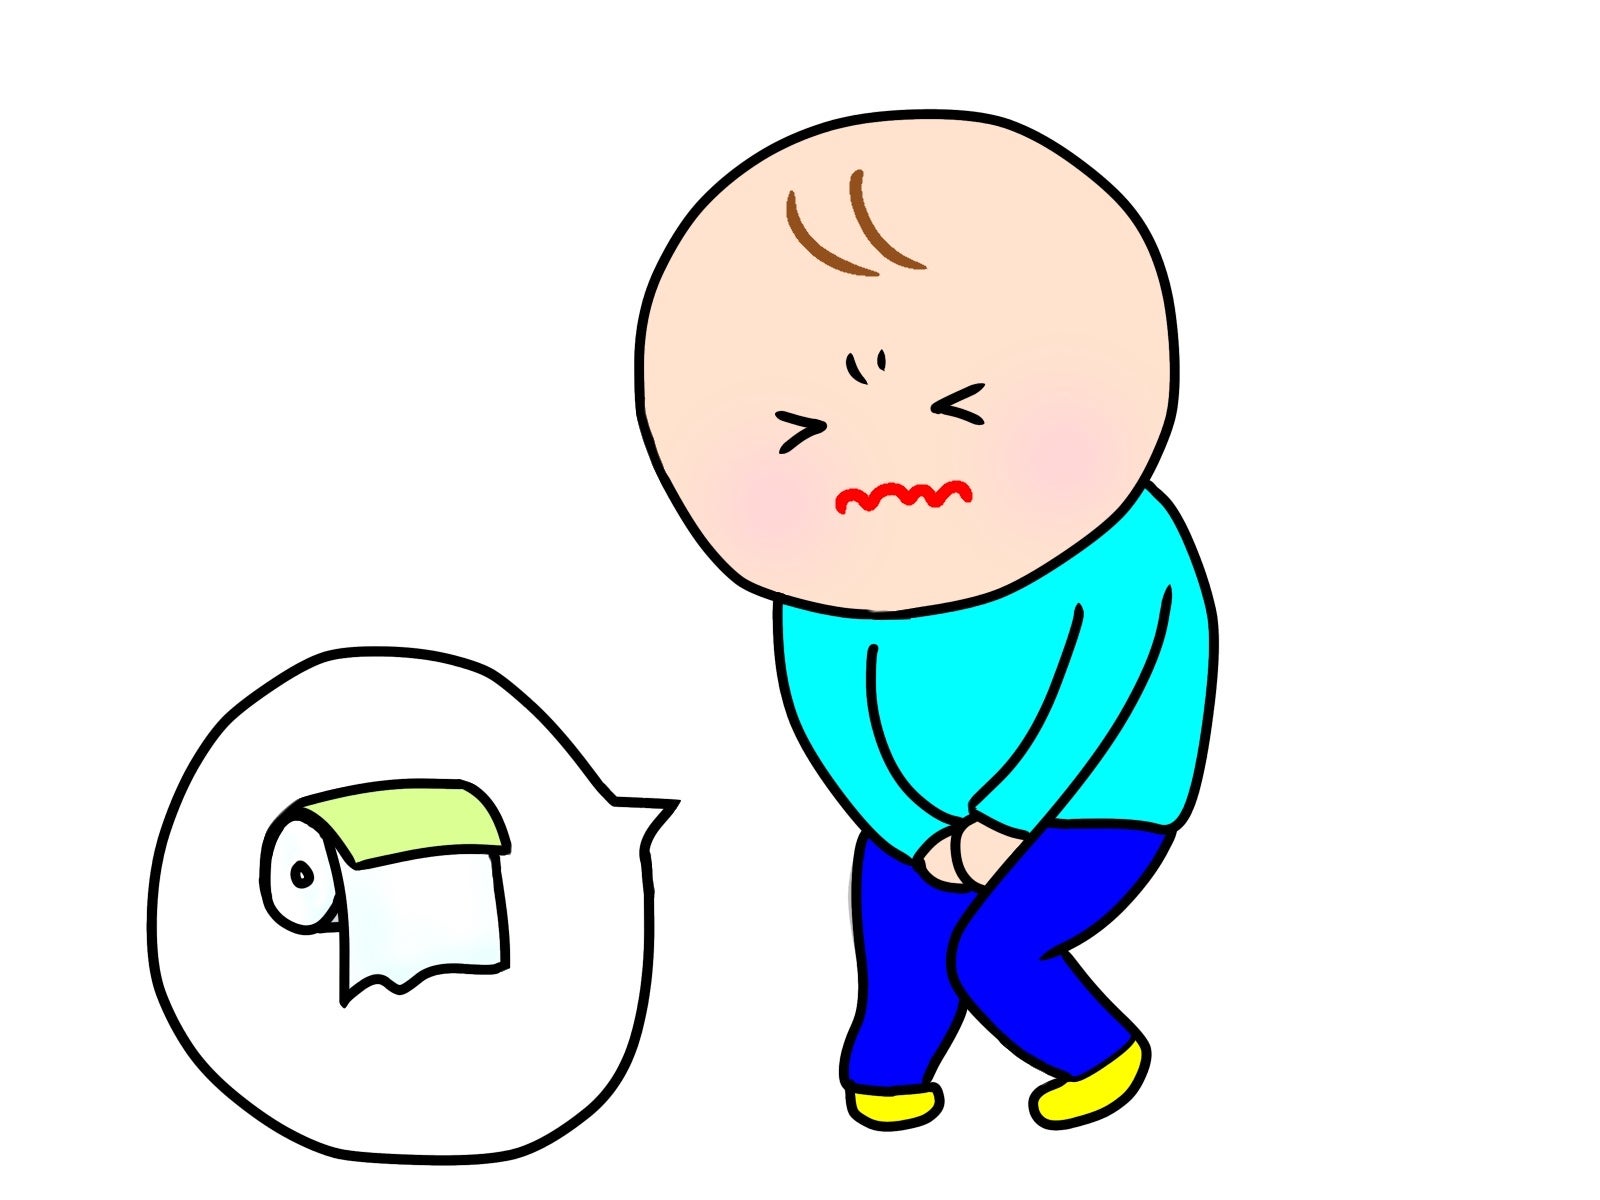 過活動膀胱が原因の頻尿に効く市販薬 男性向け トイレが近い時に飲む市販薬 頻尿・膀胱炎・残尿感に